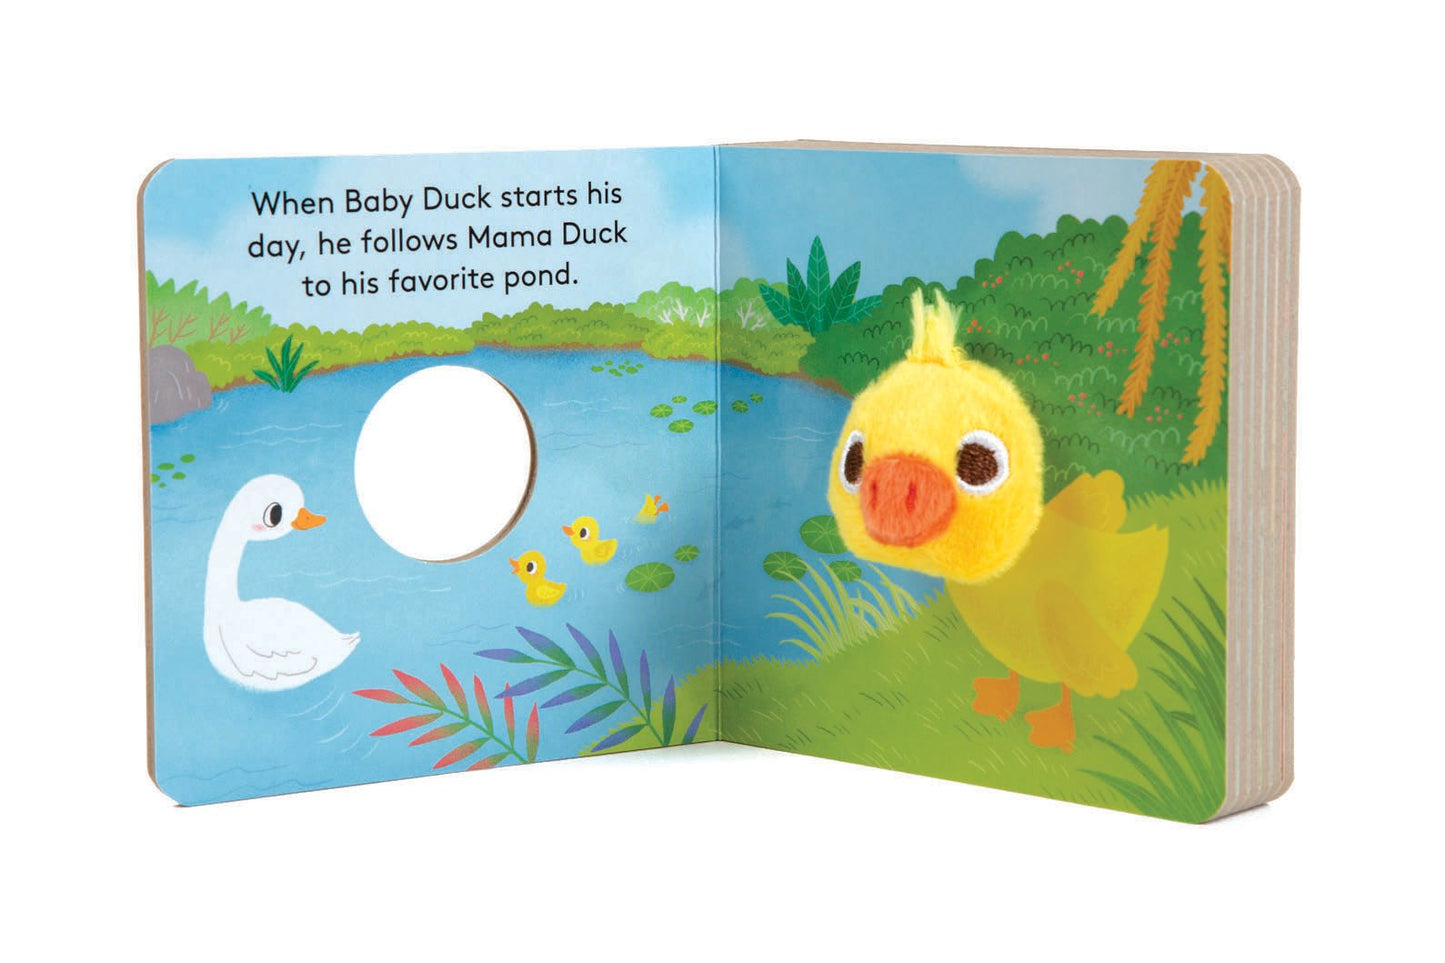 Baby Duck Finger Puppet Book